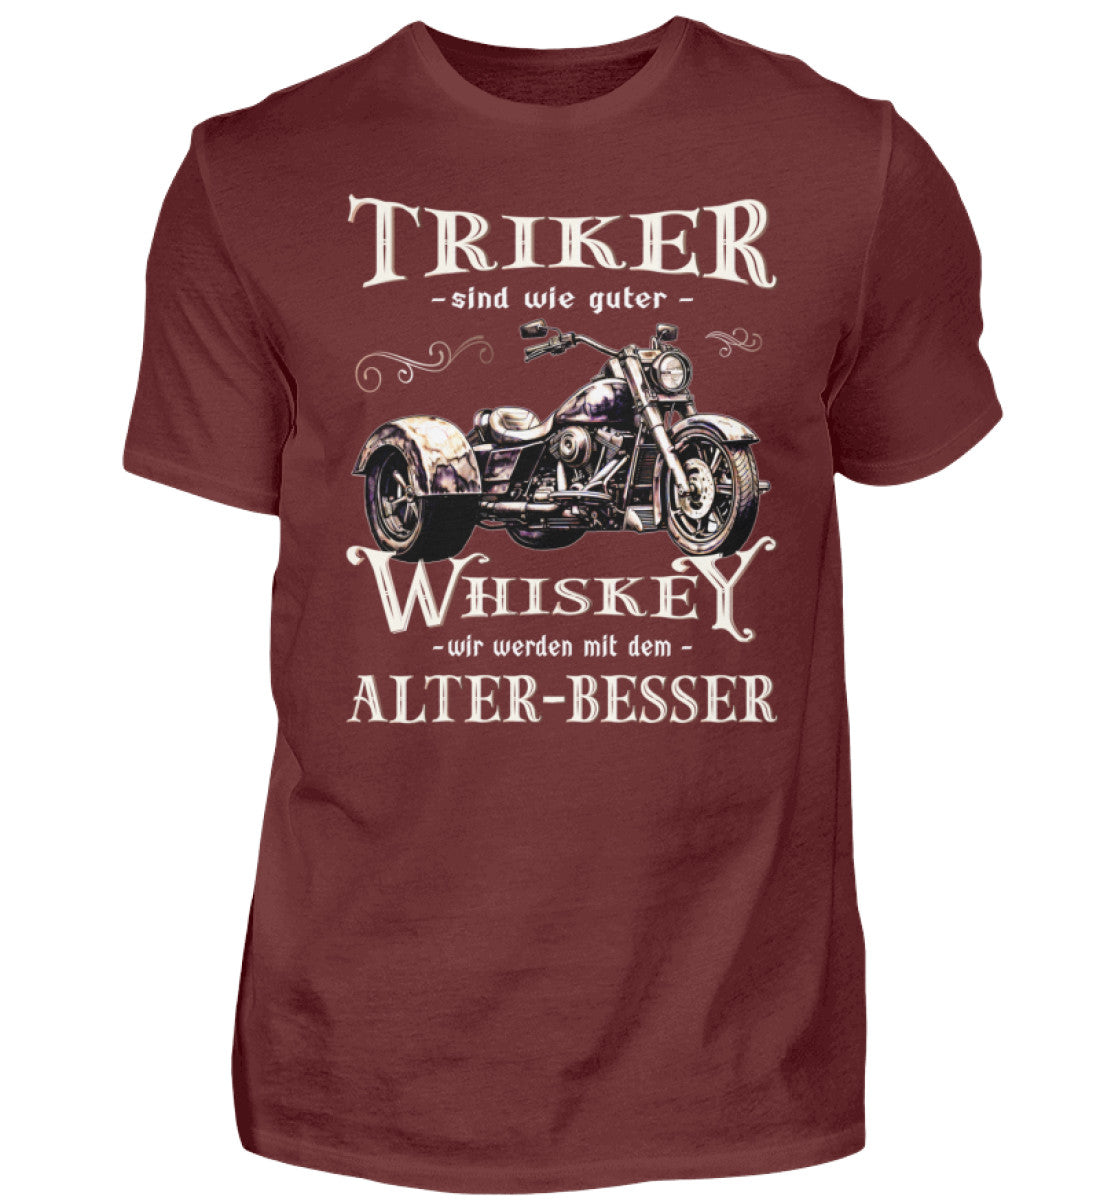 Ein T-Shirt für Trike Fahrer von Wingbikers mit dem Aufdruck, Triker sind wie guter Whiskey - Wir werden mit dem Alter besser, in weinrot.